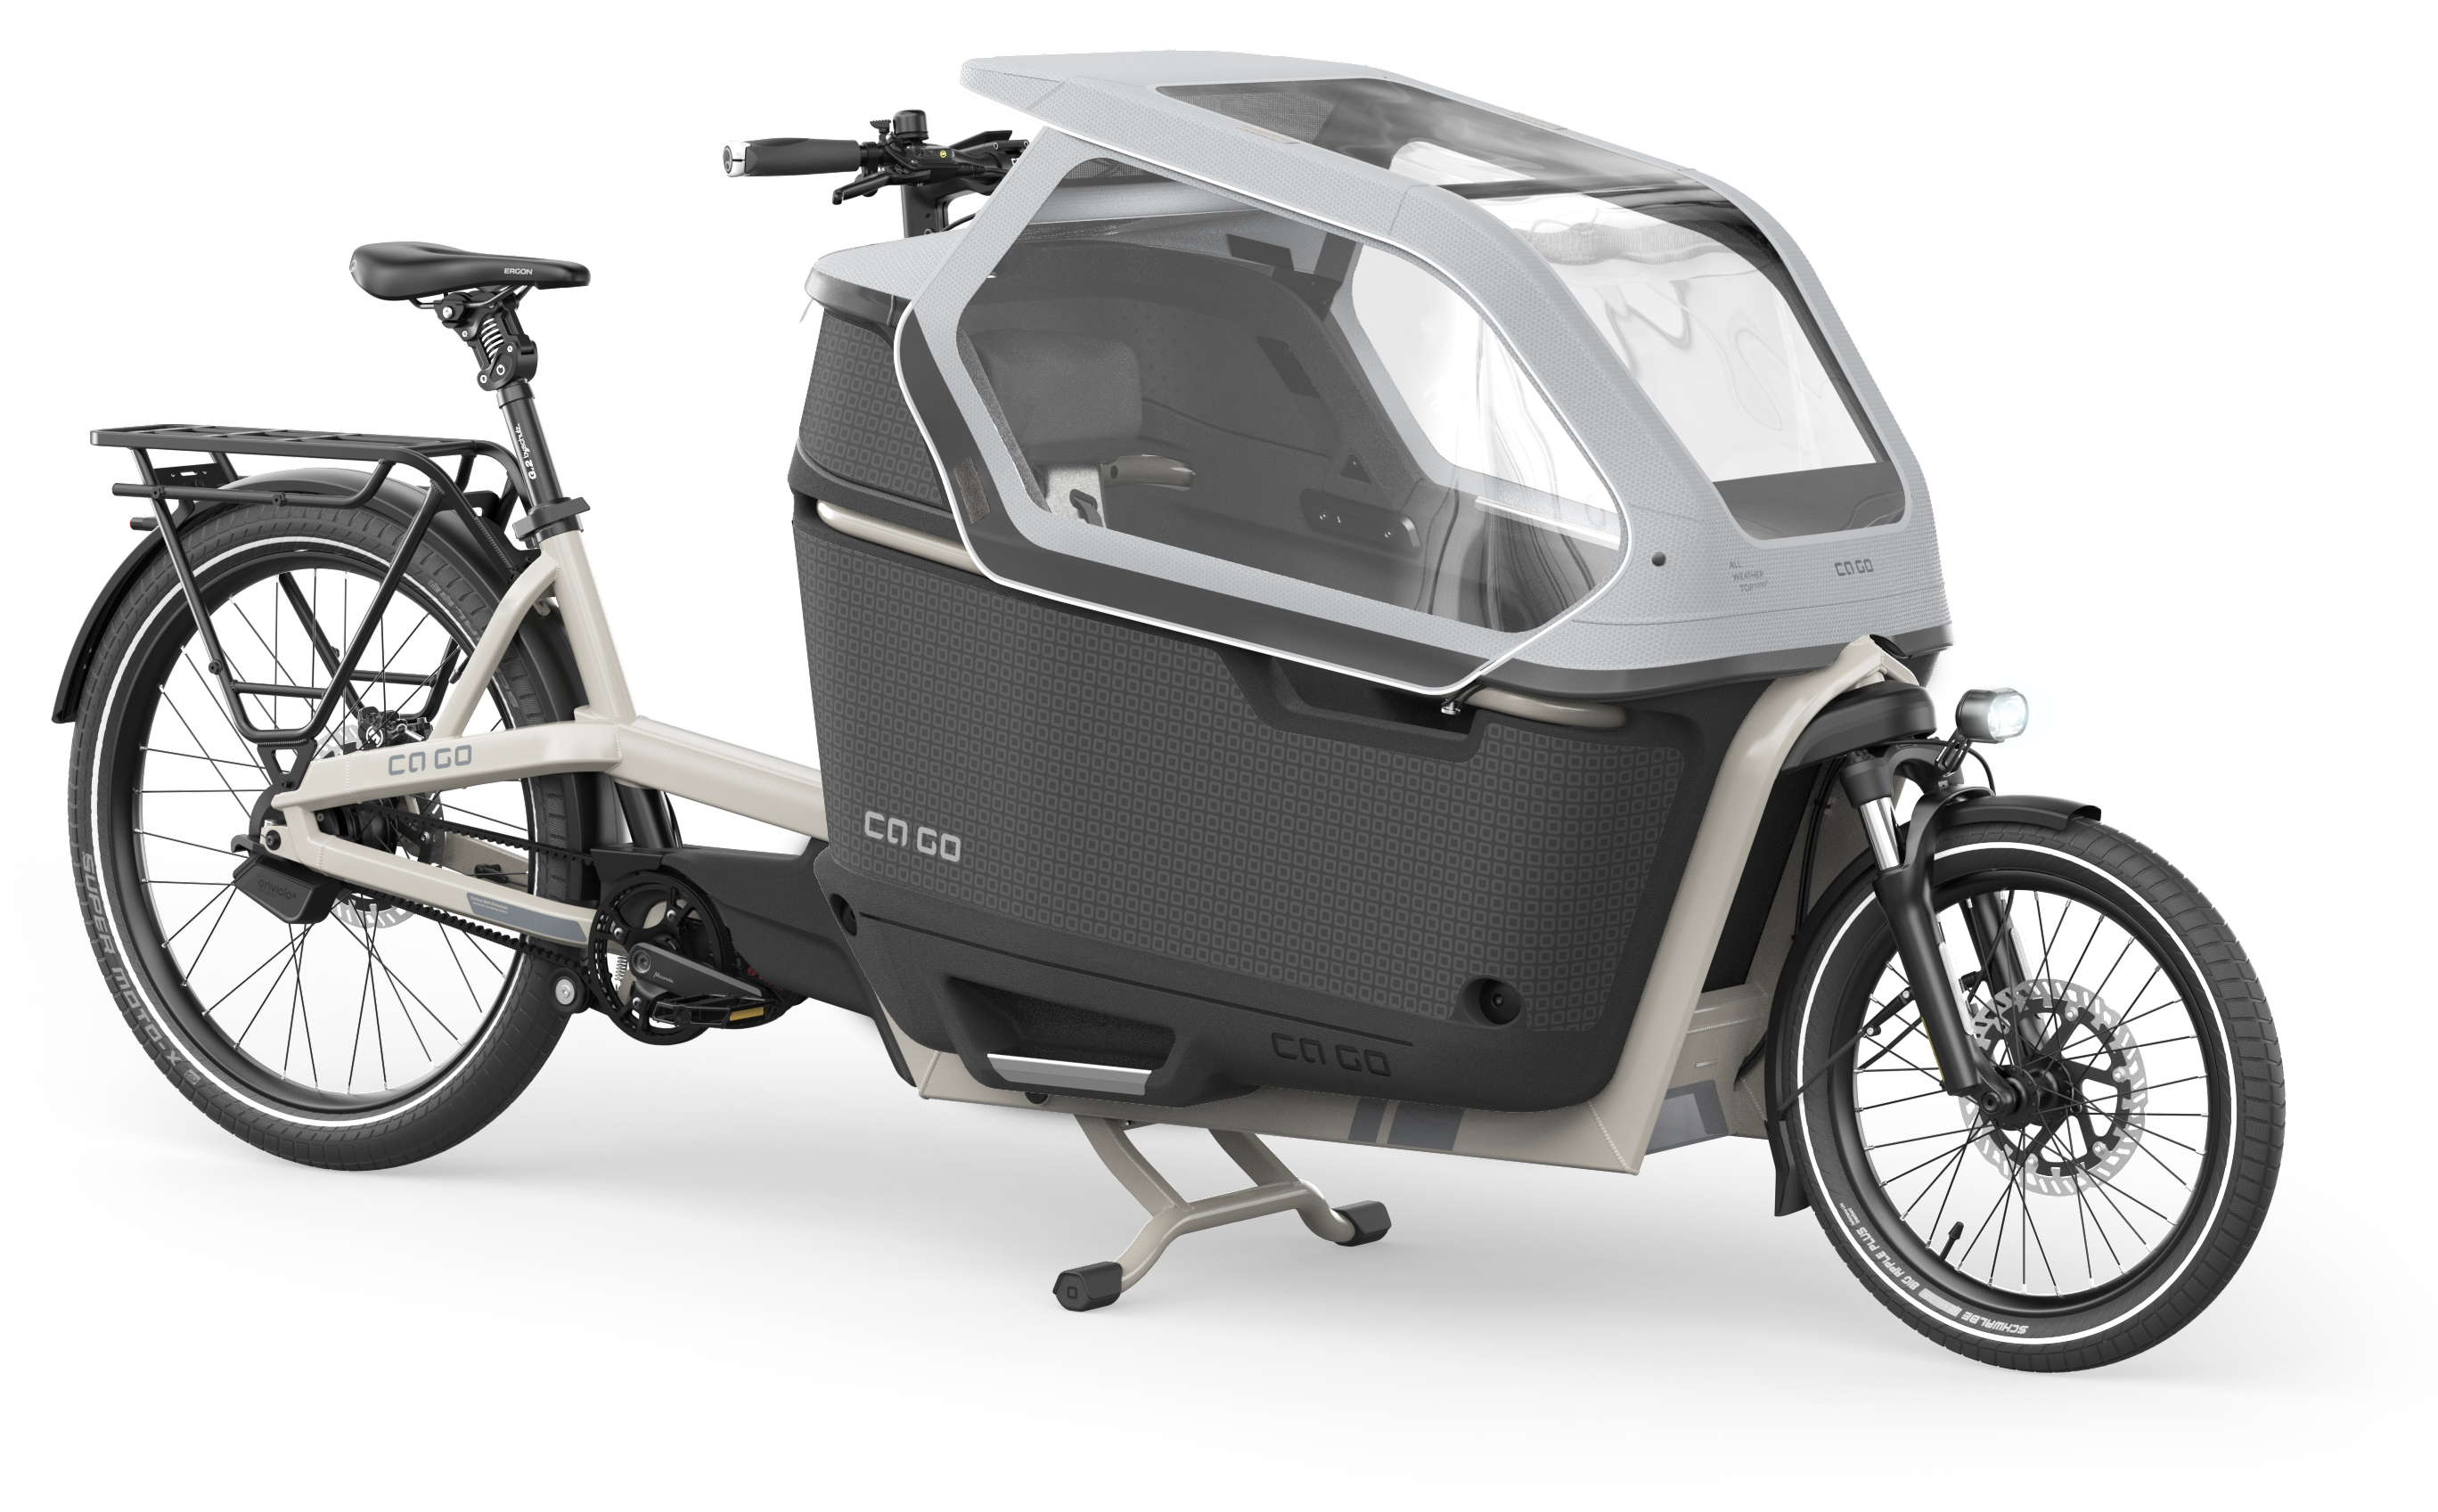 Ca Go e-cargo bike model overview